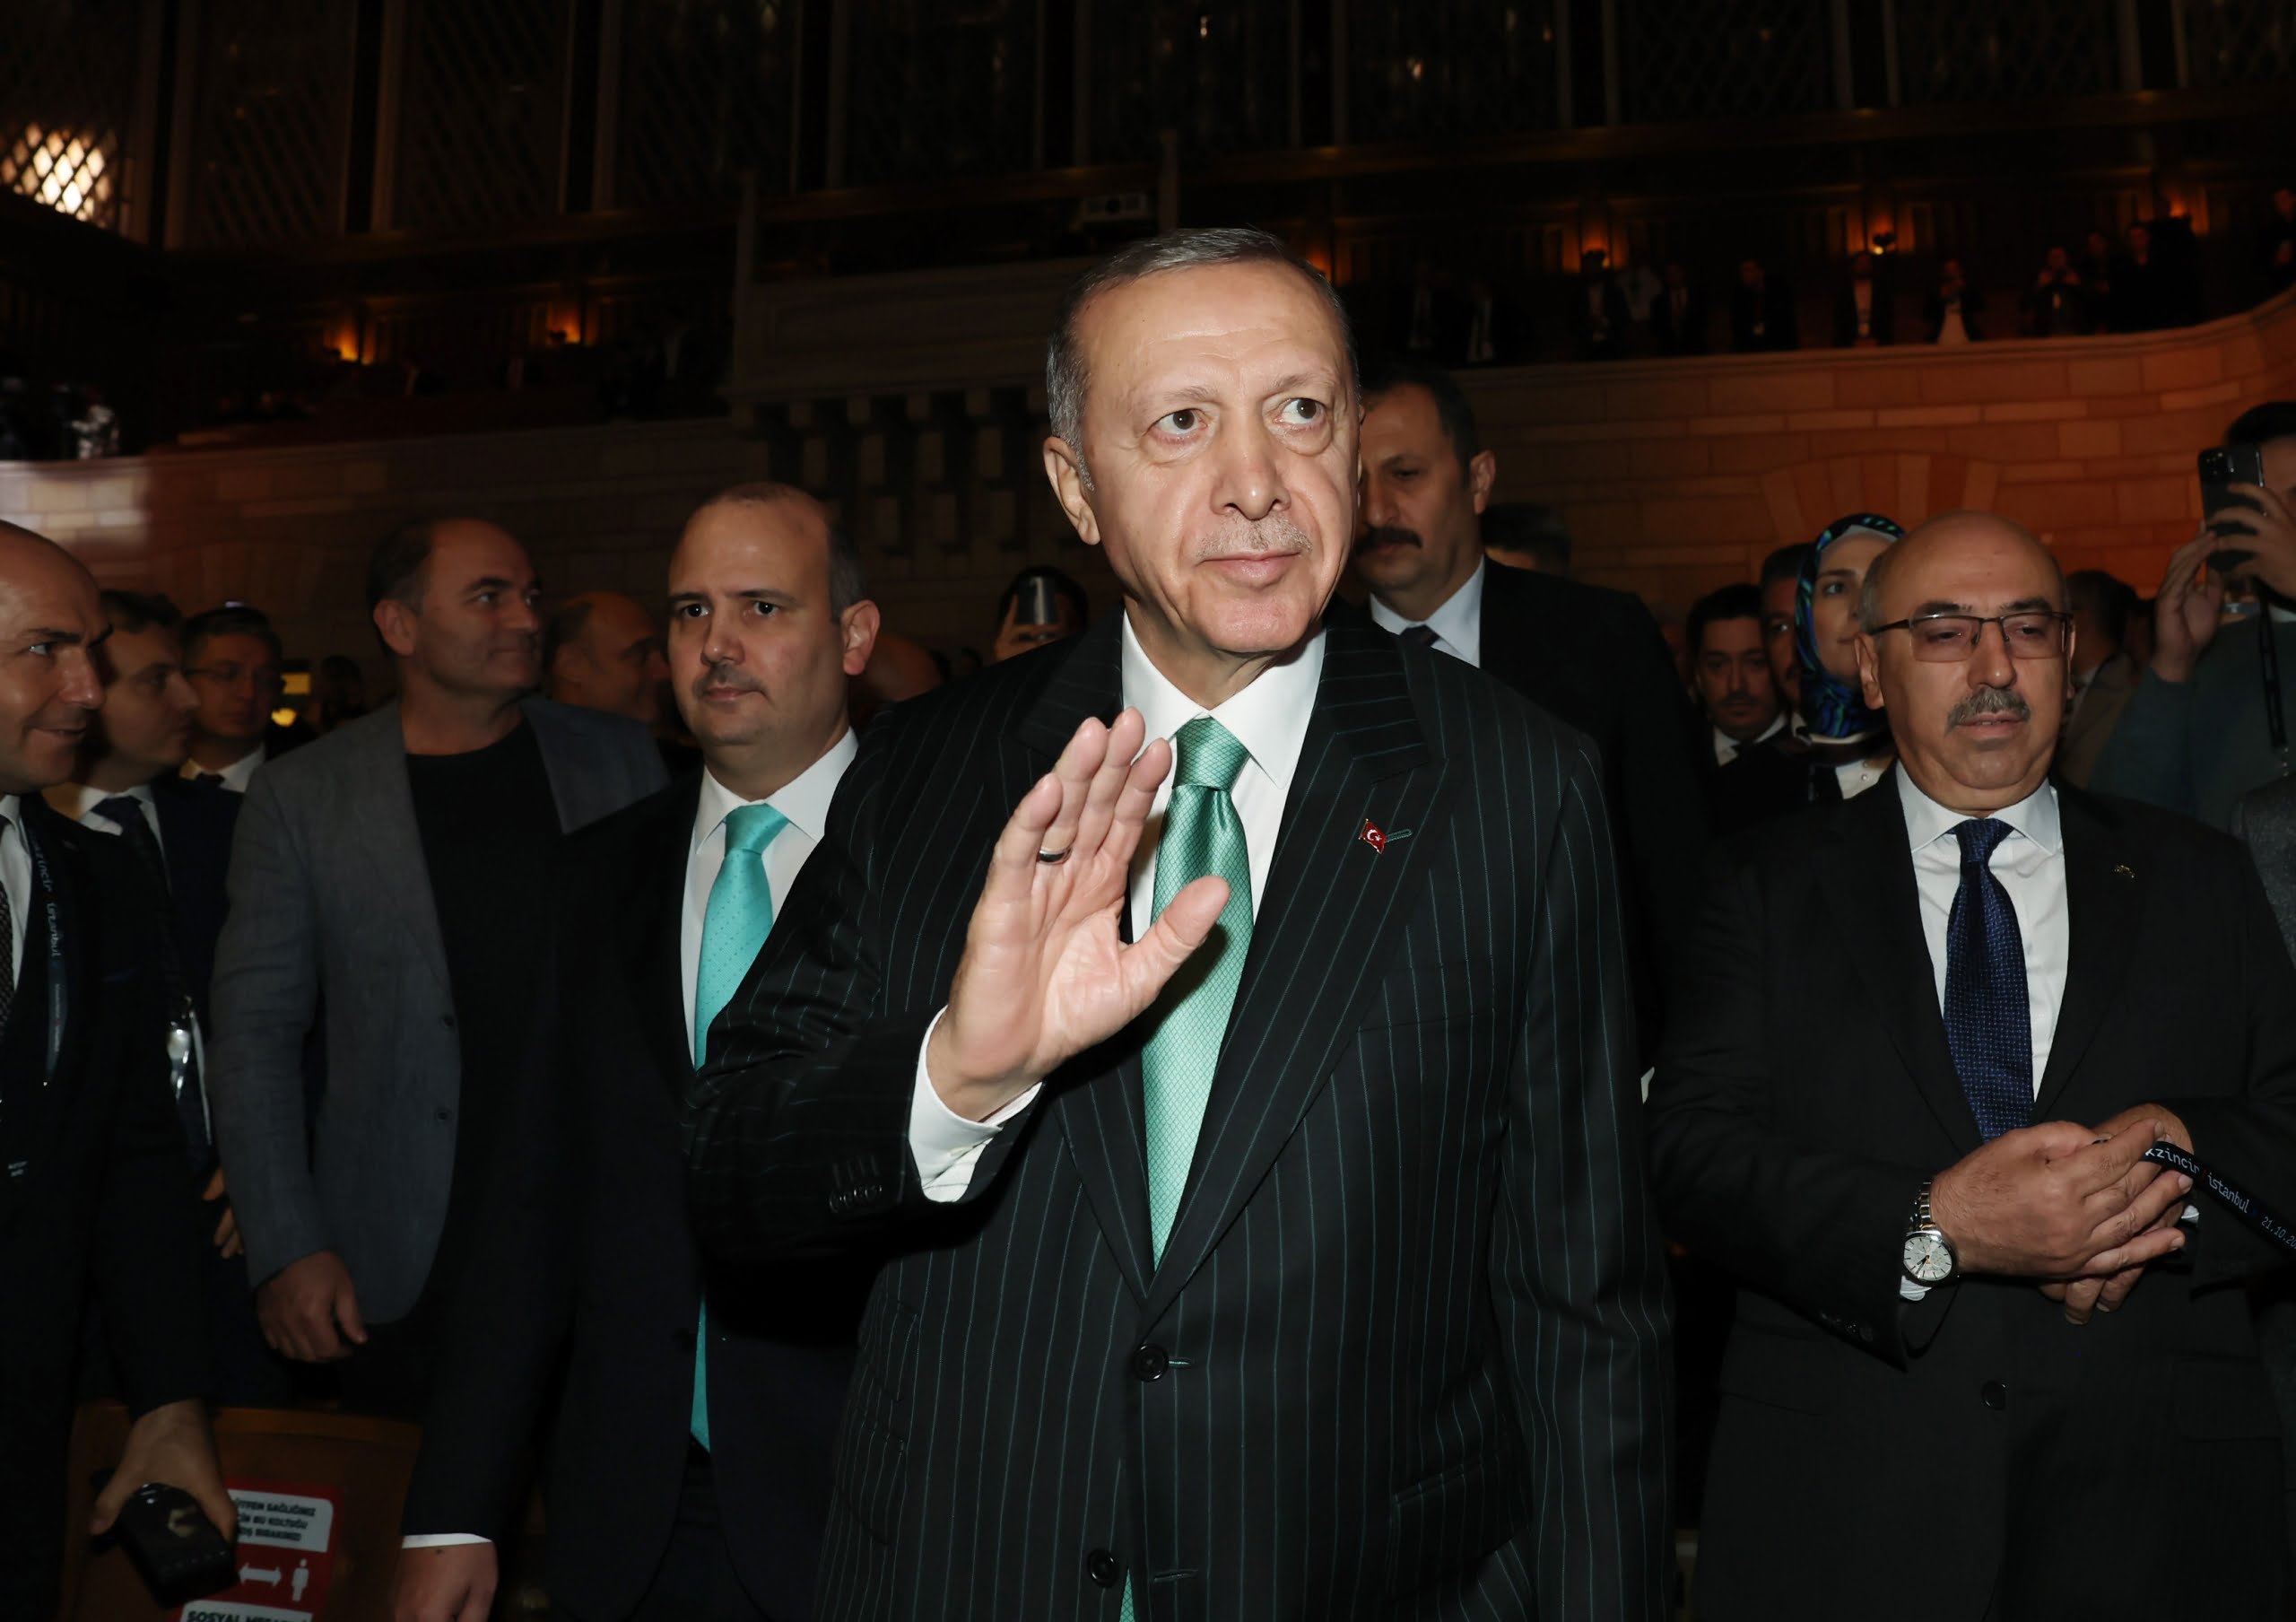 Cumhurbaşkanı Erdoğan'dan gençlere kripto para uyarısı